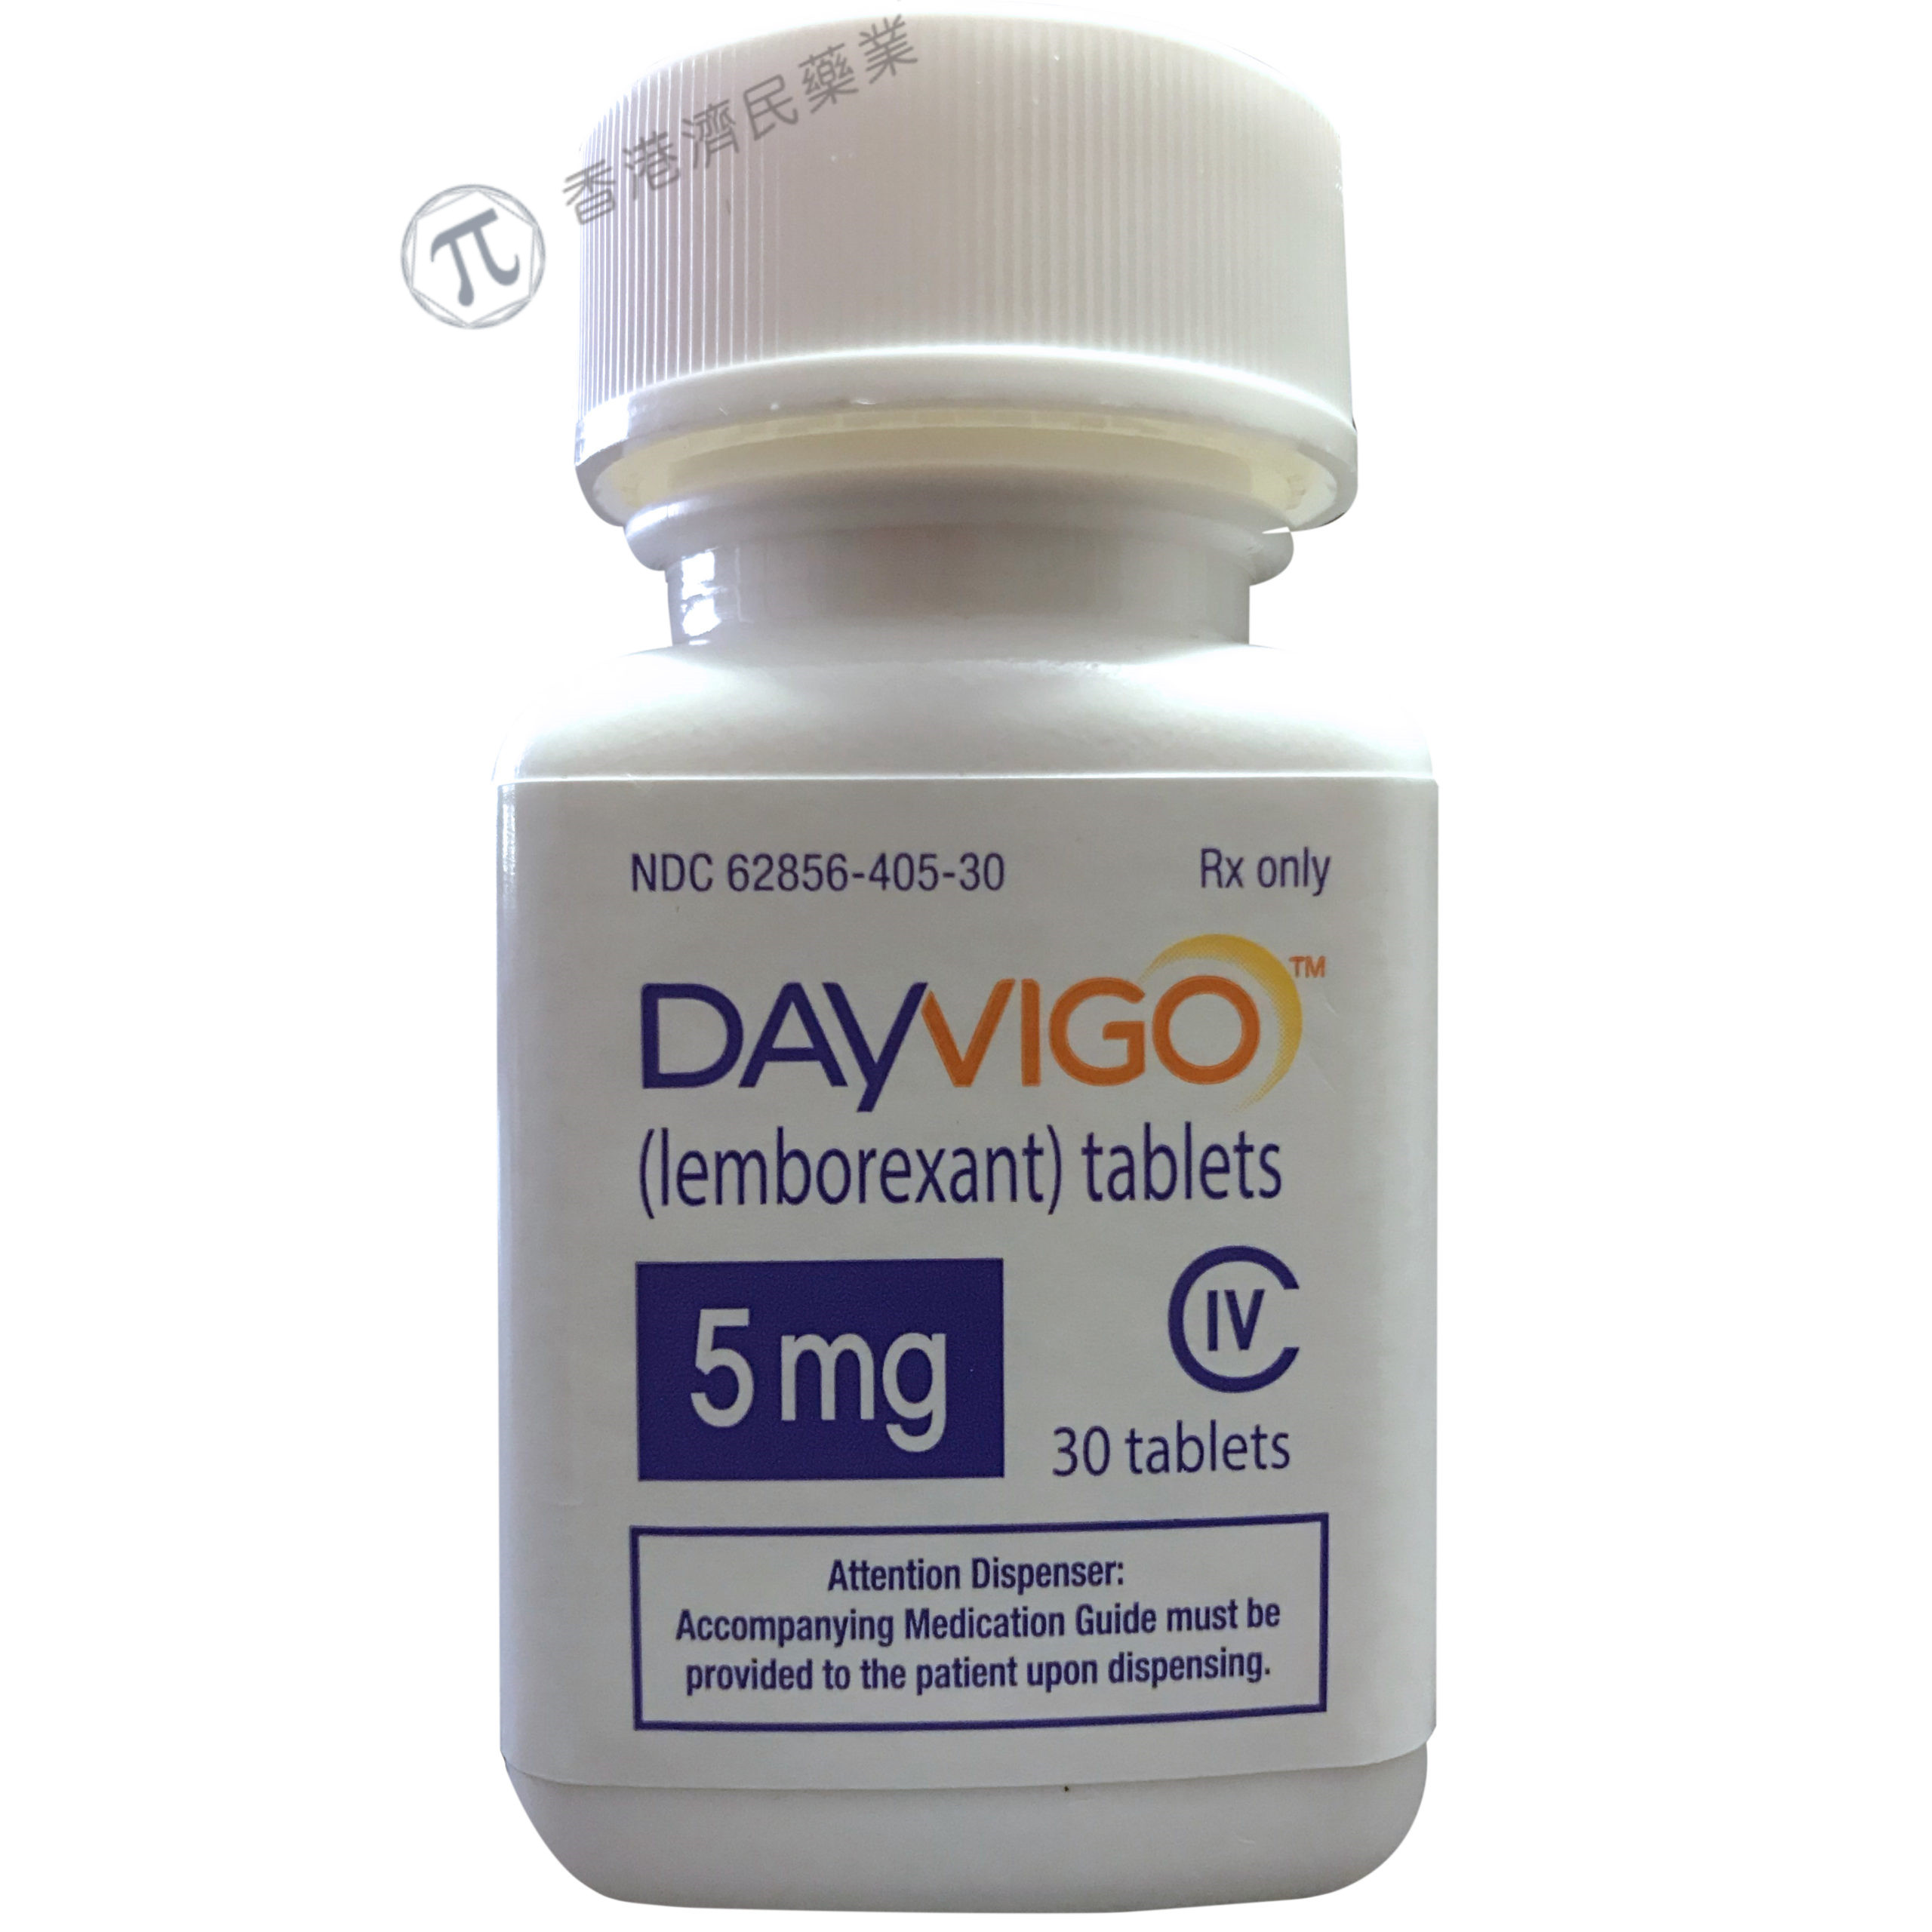 抗失眠药物Dayvigo更新标签：纳入了呼吸功能受损患者的使用数据